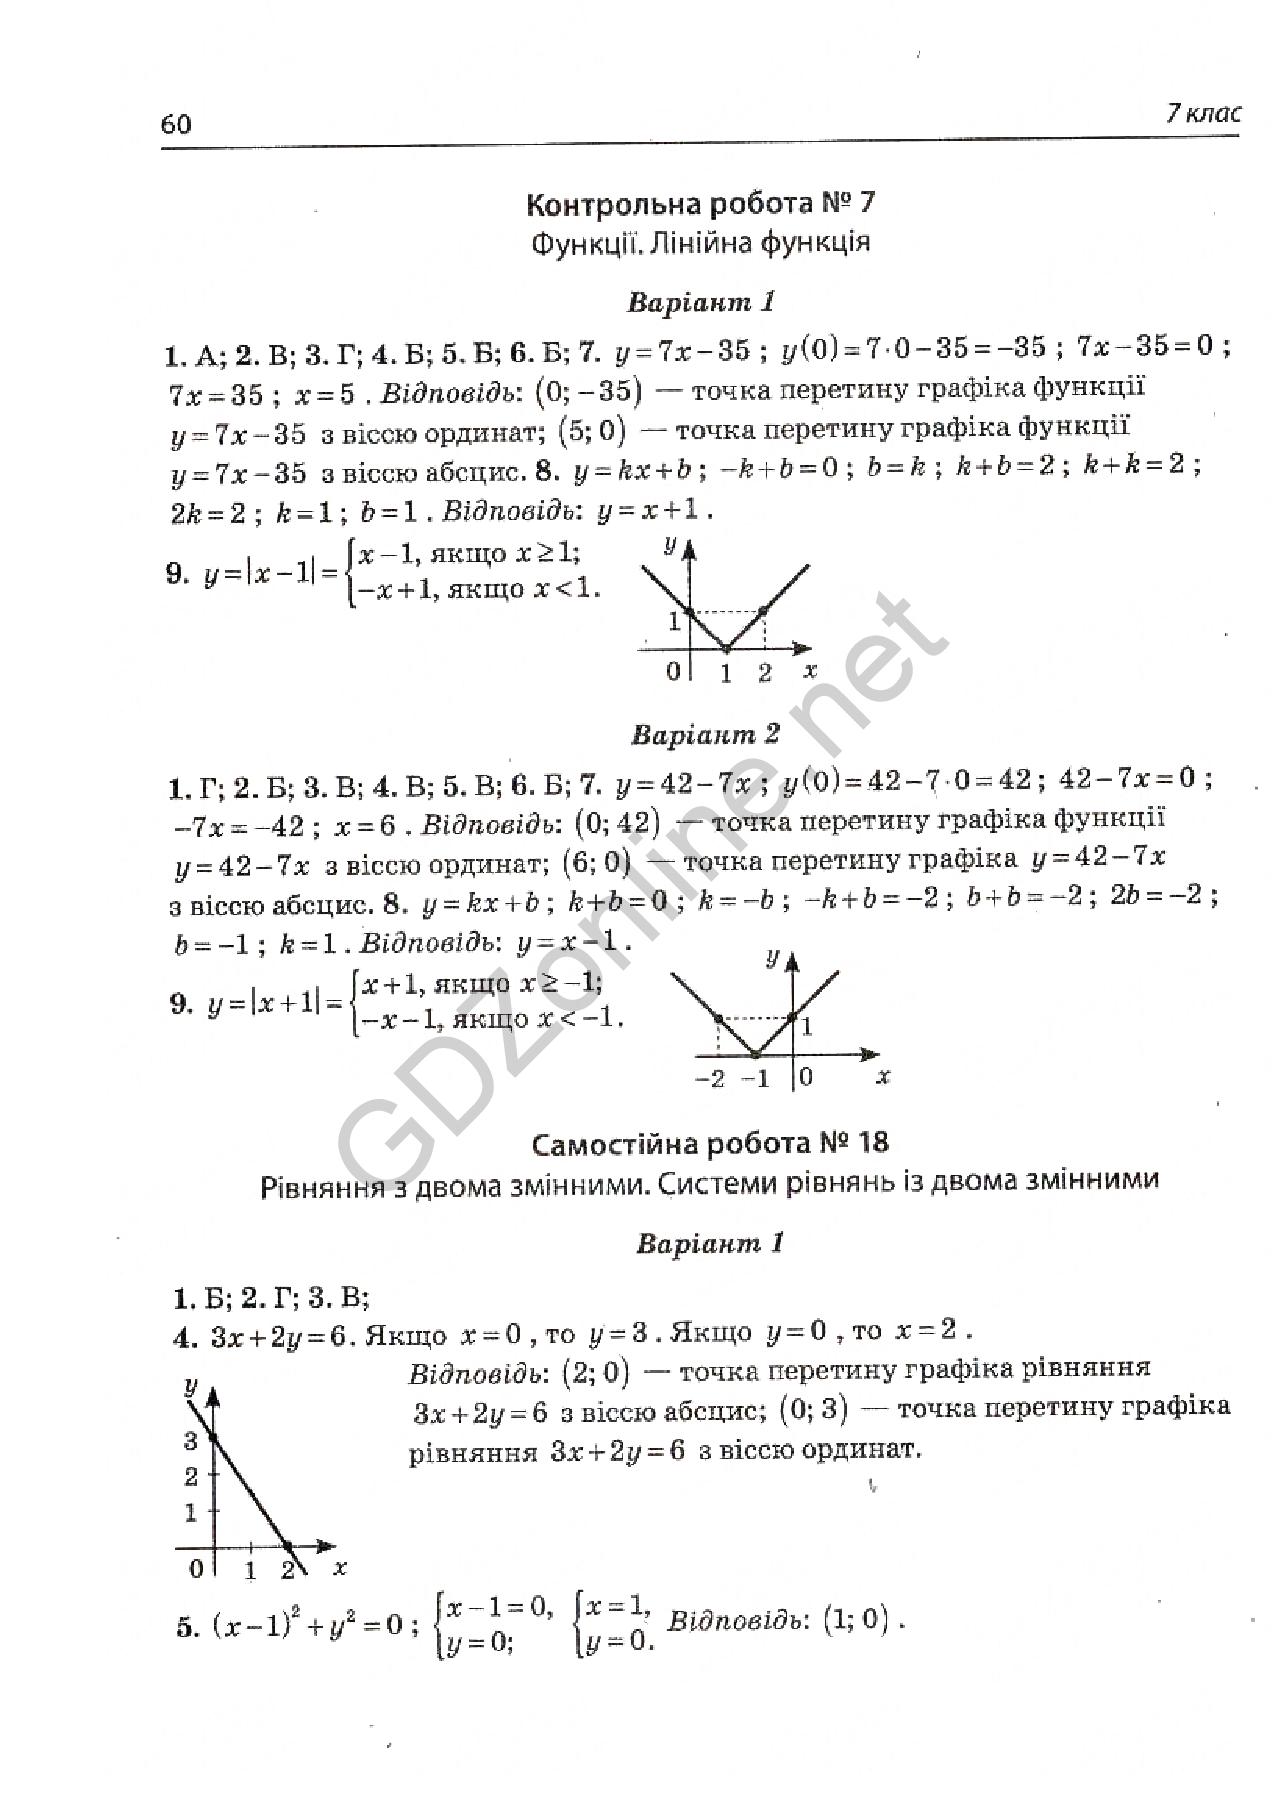 Страница 18 гдз по контрольних и самостийних робит з алгебри и геометрии 9 класса авторов а.и.корнес с.п.бабенко